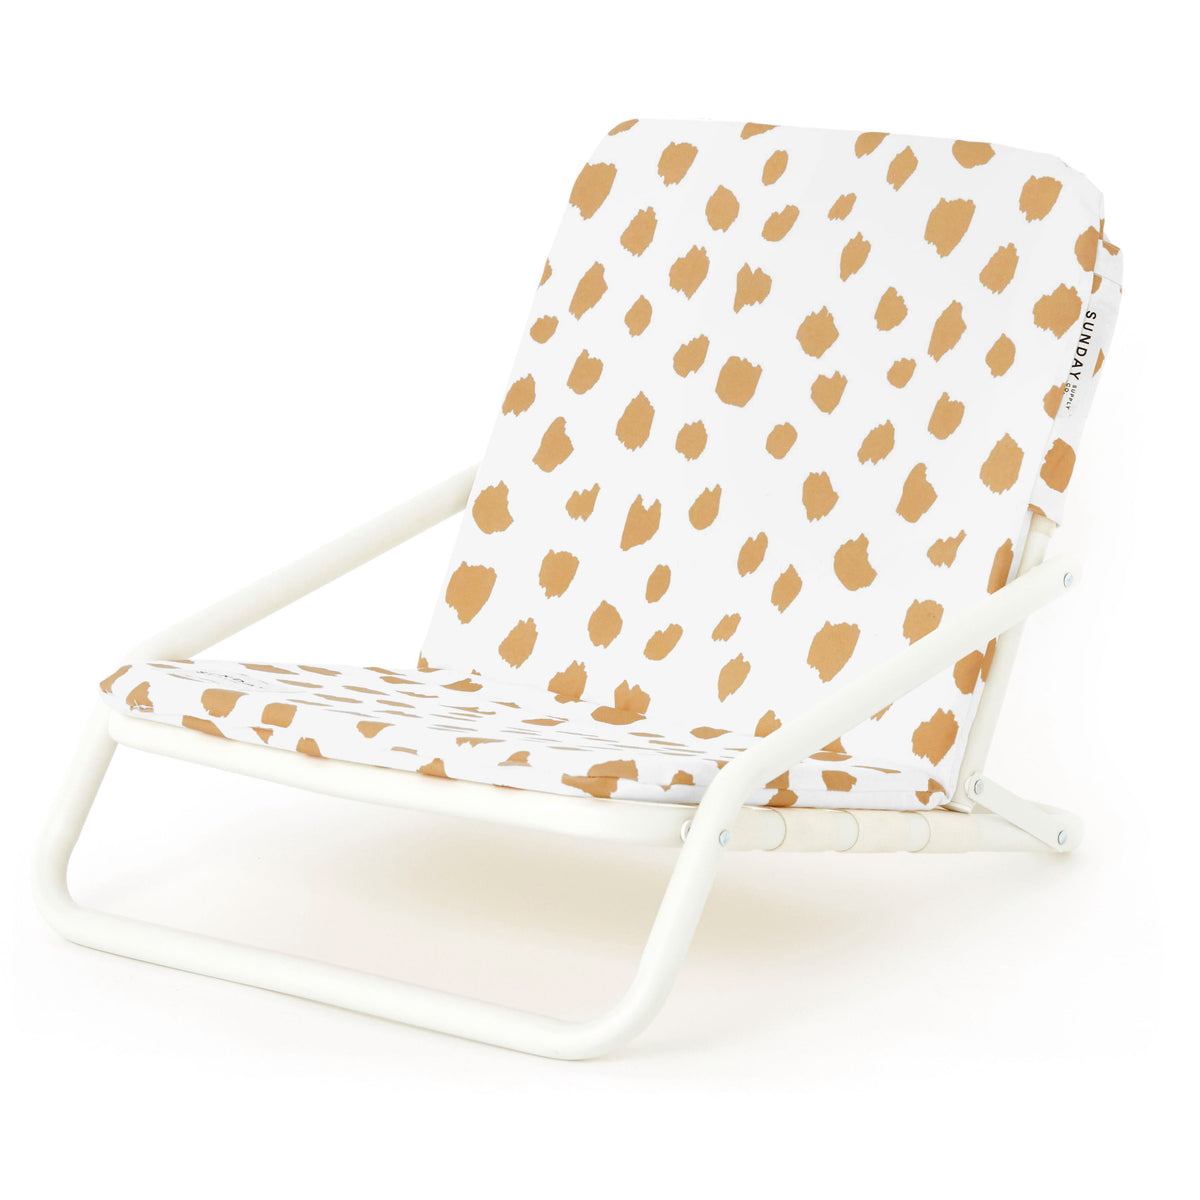 Golden Sands Beach Chair